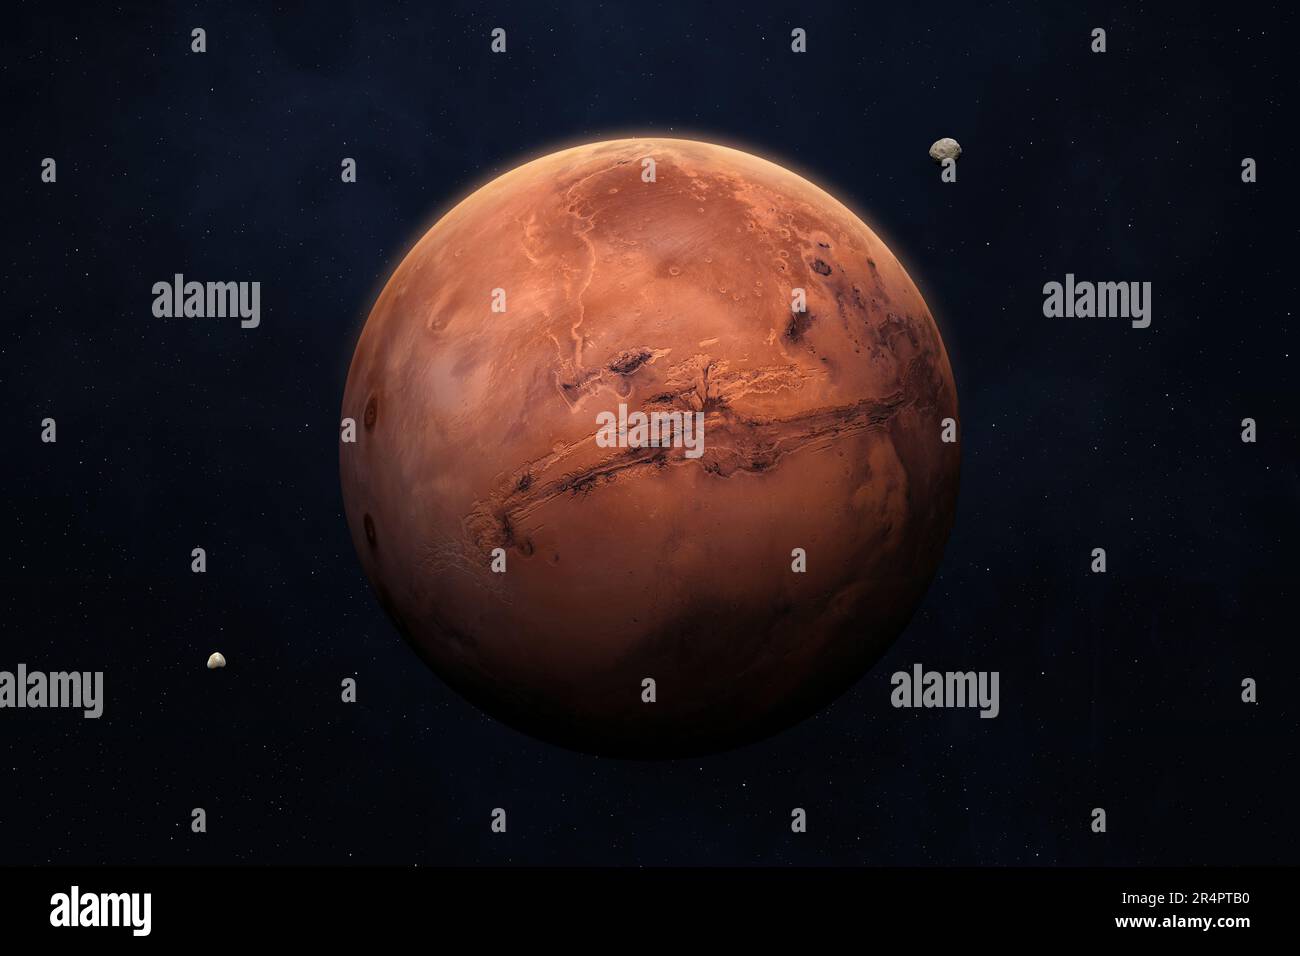 Pianeta Marte nel cielo stellato del sistema solare. Marte, Phobos e Deimos. Marte è un pianeta rosso del sistema solare. Elementi forniti dalla NASA. Foto Stock